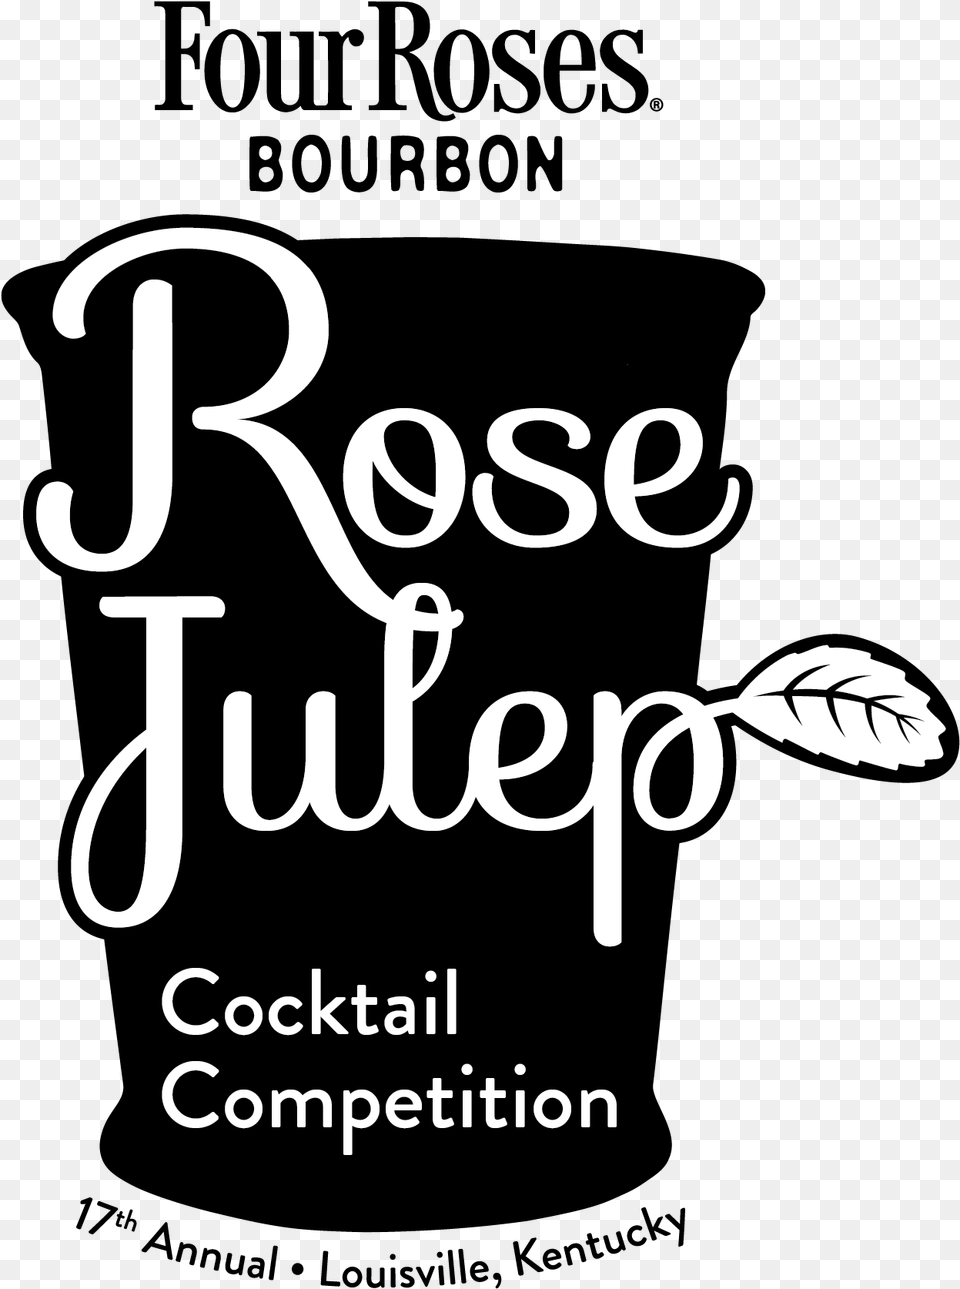 Four Roses Bourbon, Book, Publication, Advertisement, Text Png Image